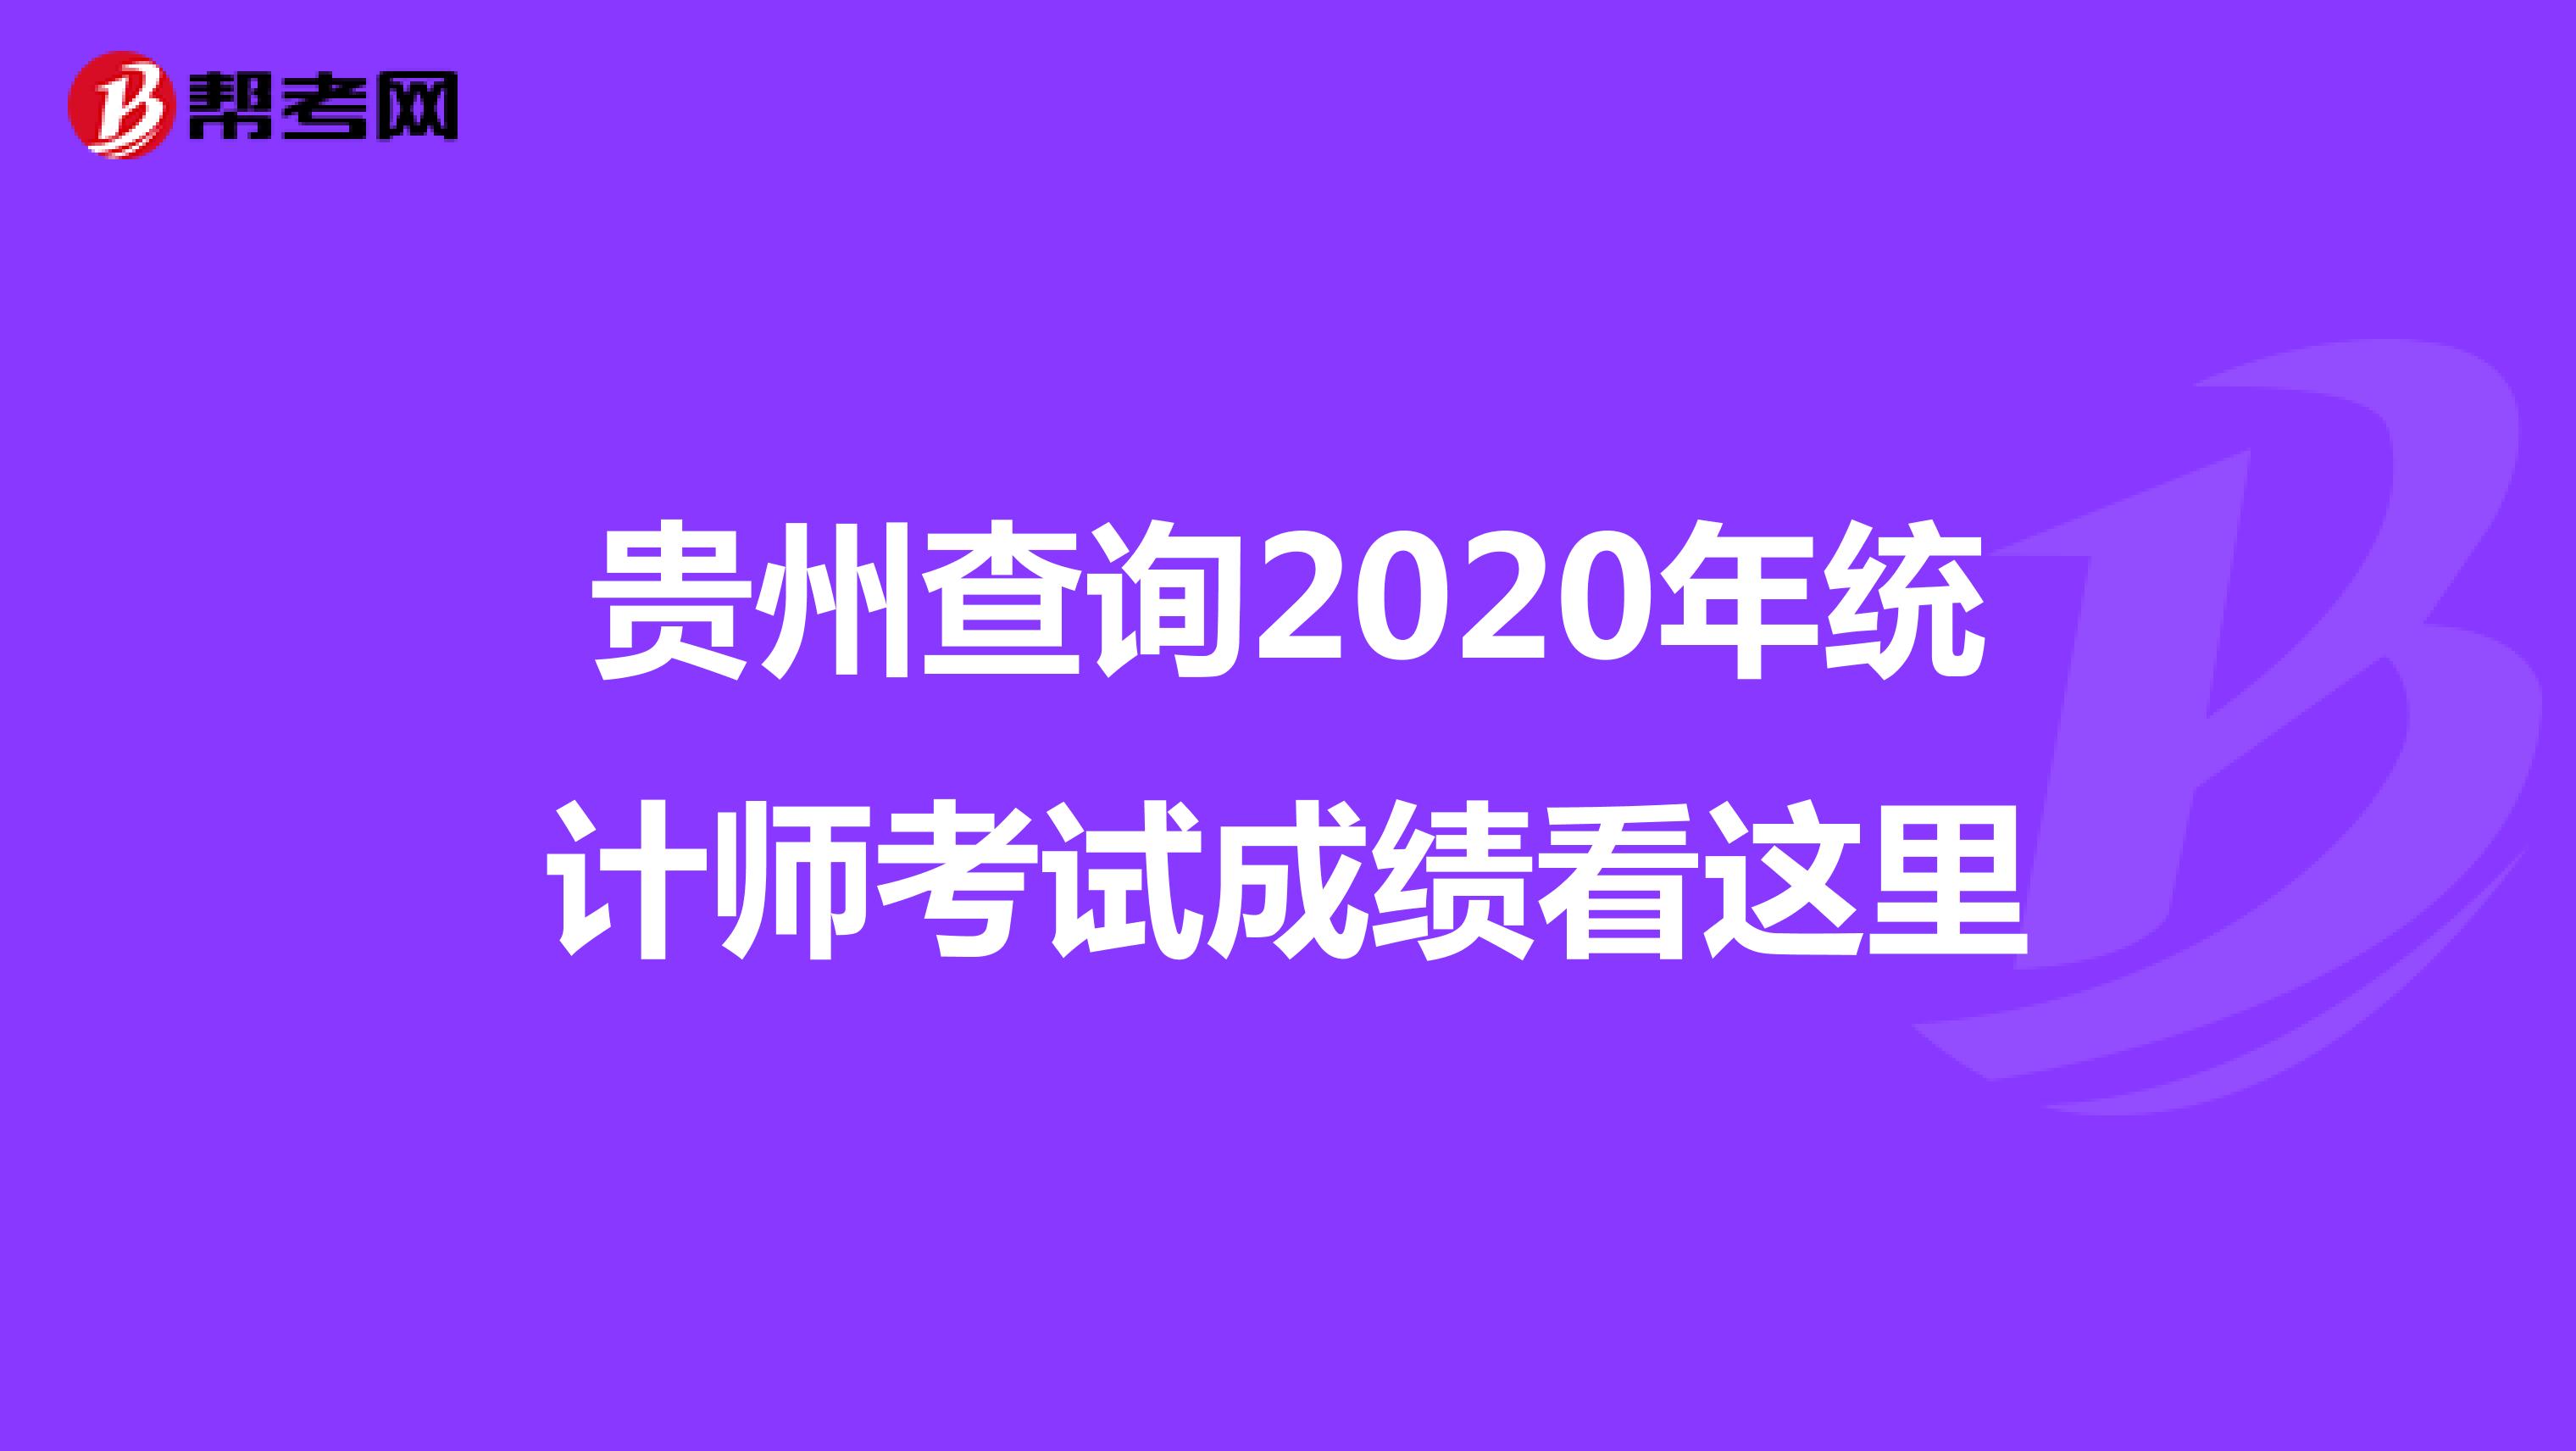 贵州查询2020年统计师考试成绩看这里